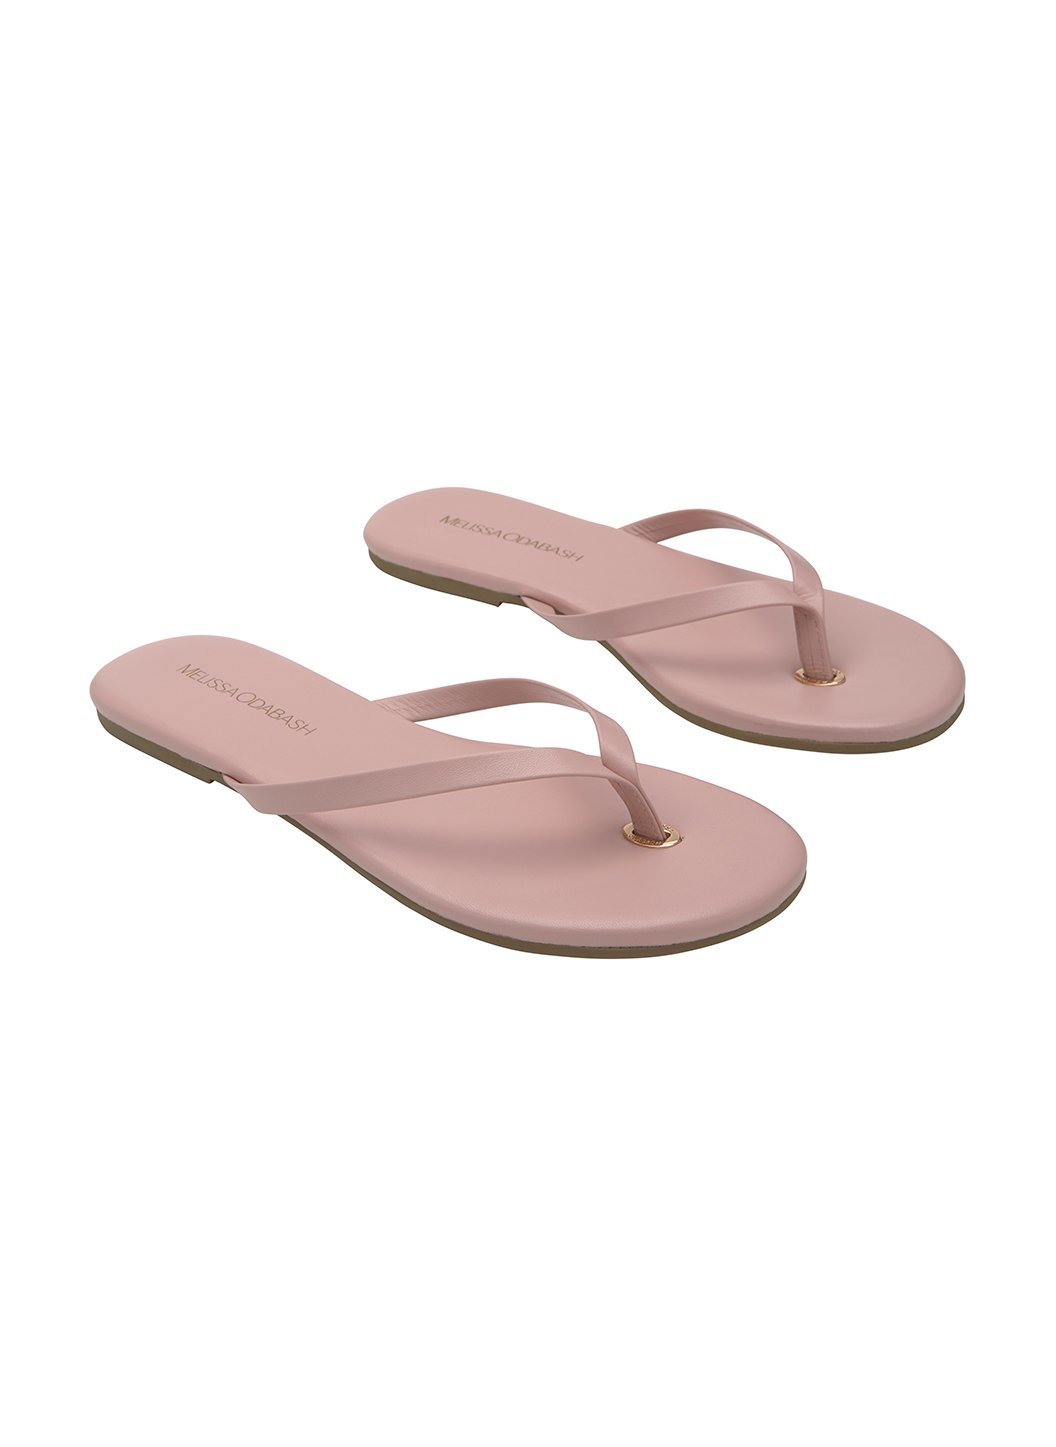 Leather Flip Flops Pink | Melissa 